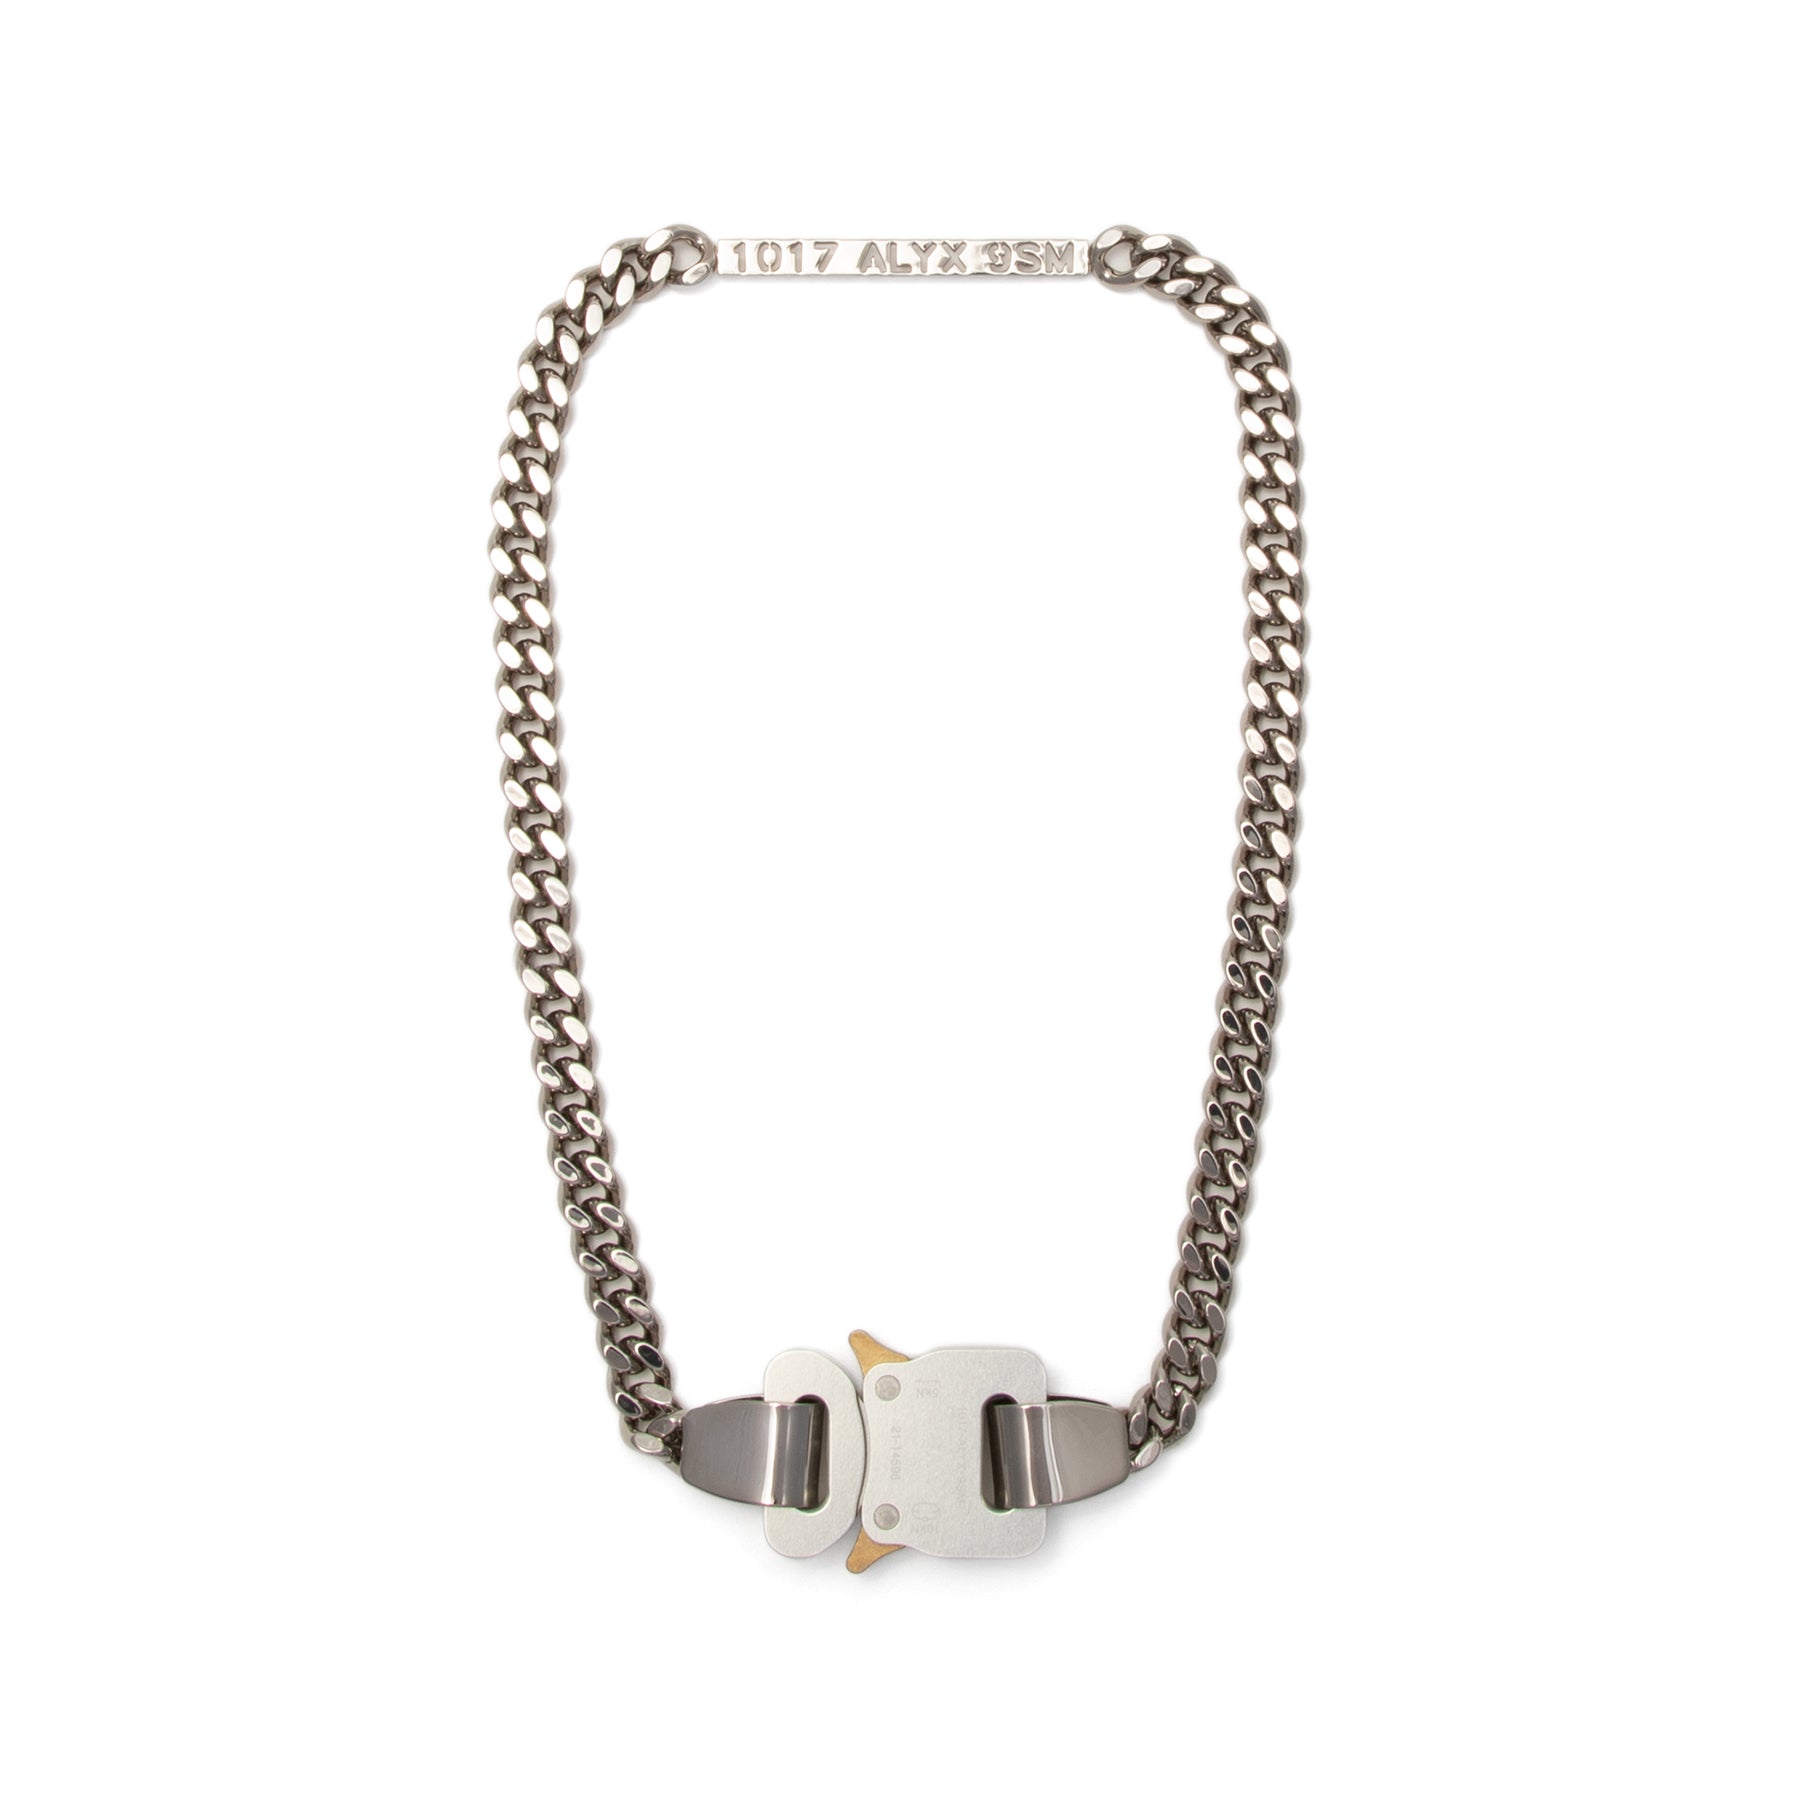 1017 ALYX 9SM Buckle Necklace Grey) – Concepts